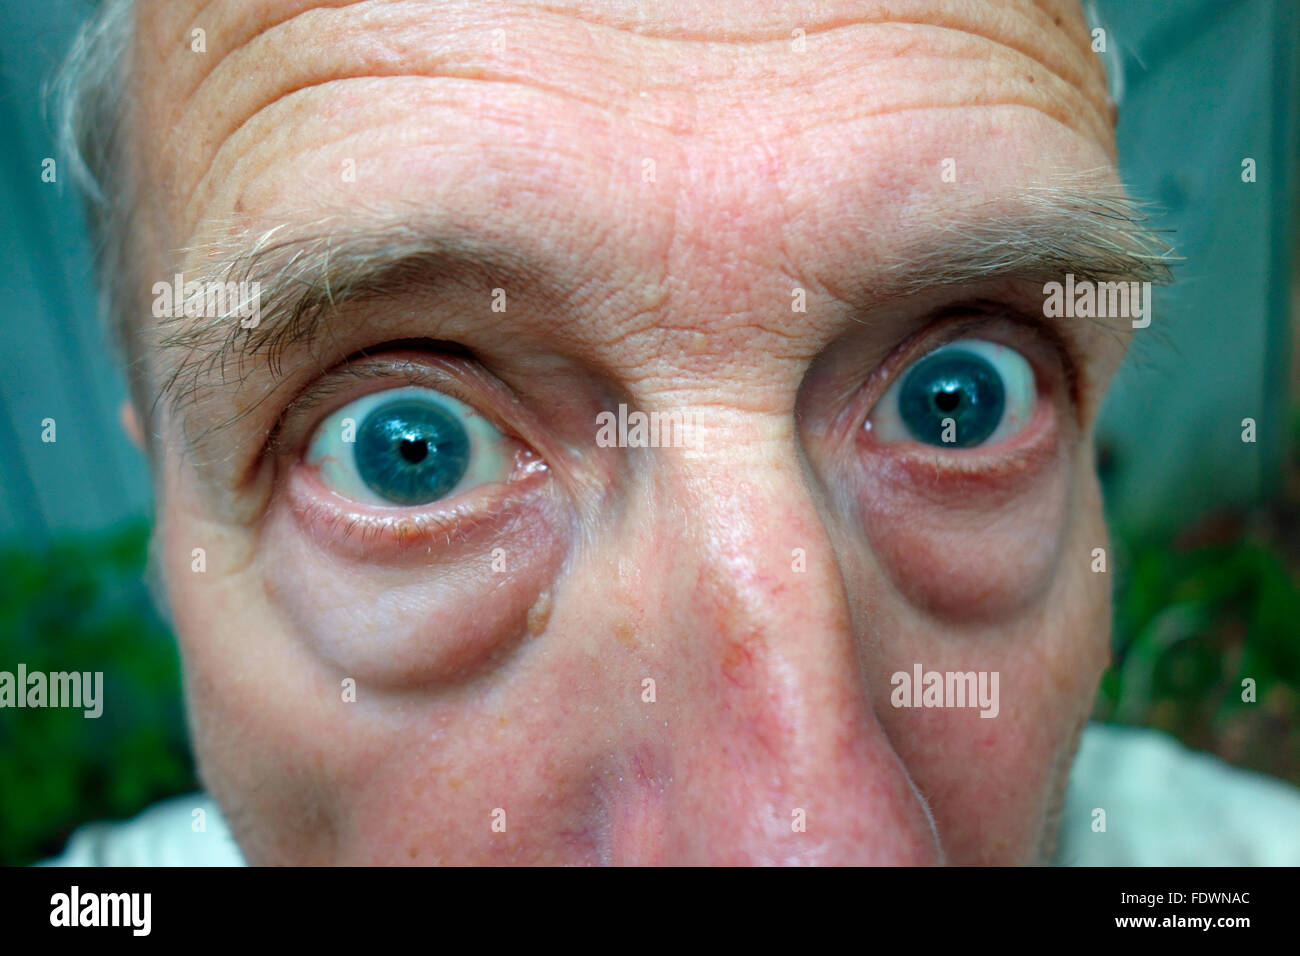 Ein lustiger Mensch Gesicht mit weit aufgerissenen Augen Stockfotografie -  Alamy